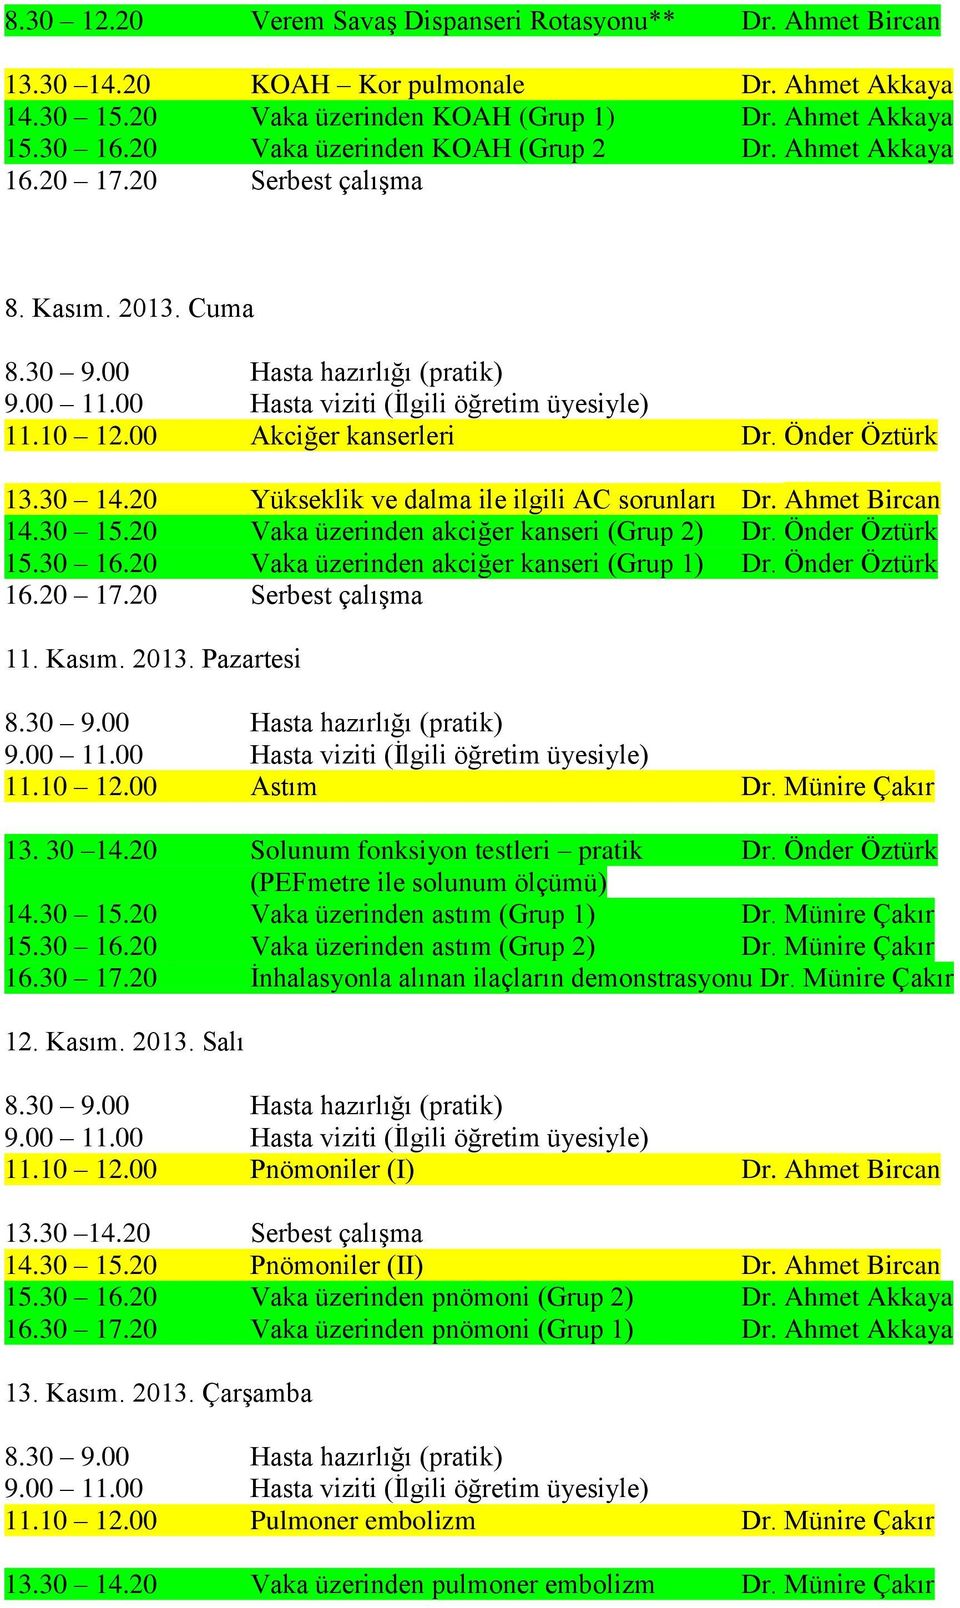 20 Vaka üzerinden akciğer kanseri (Grup 2) Dr. Önder Öztürk 15.30 16.20 Vaka üzerinden akciğer kanseri (Grup 1) Dr. Önder Öztürk 11. Kasım. 2013. Pazartesi 11.10 12.00 Astım Dr. Münire Çakır 13.